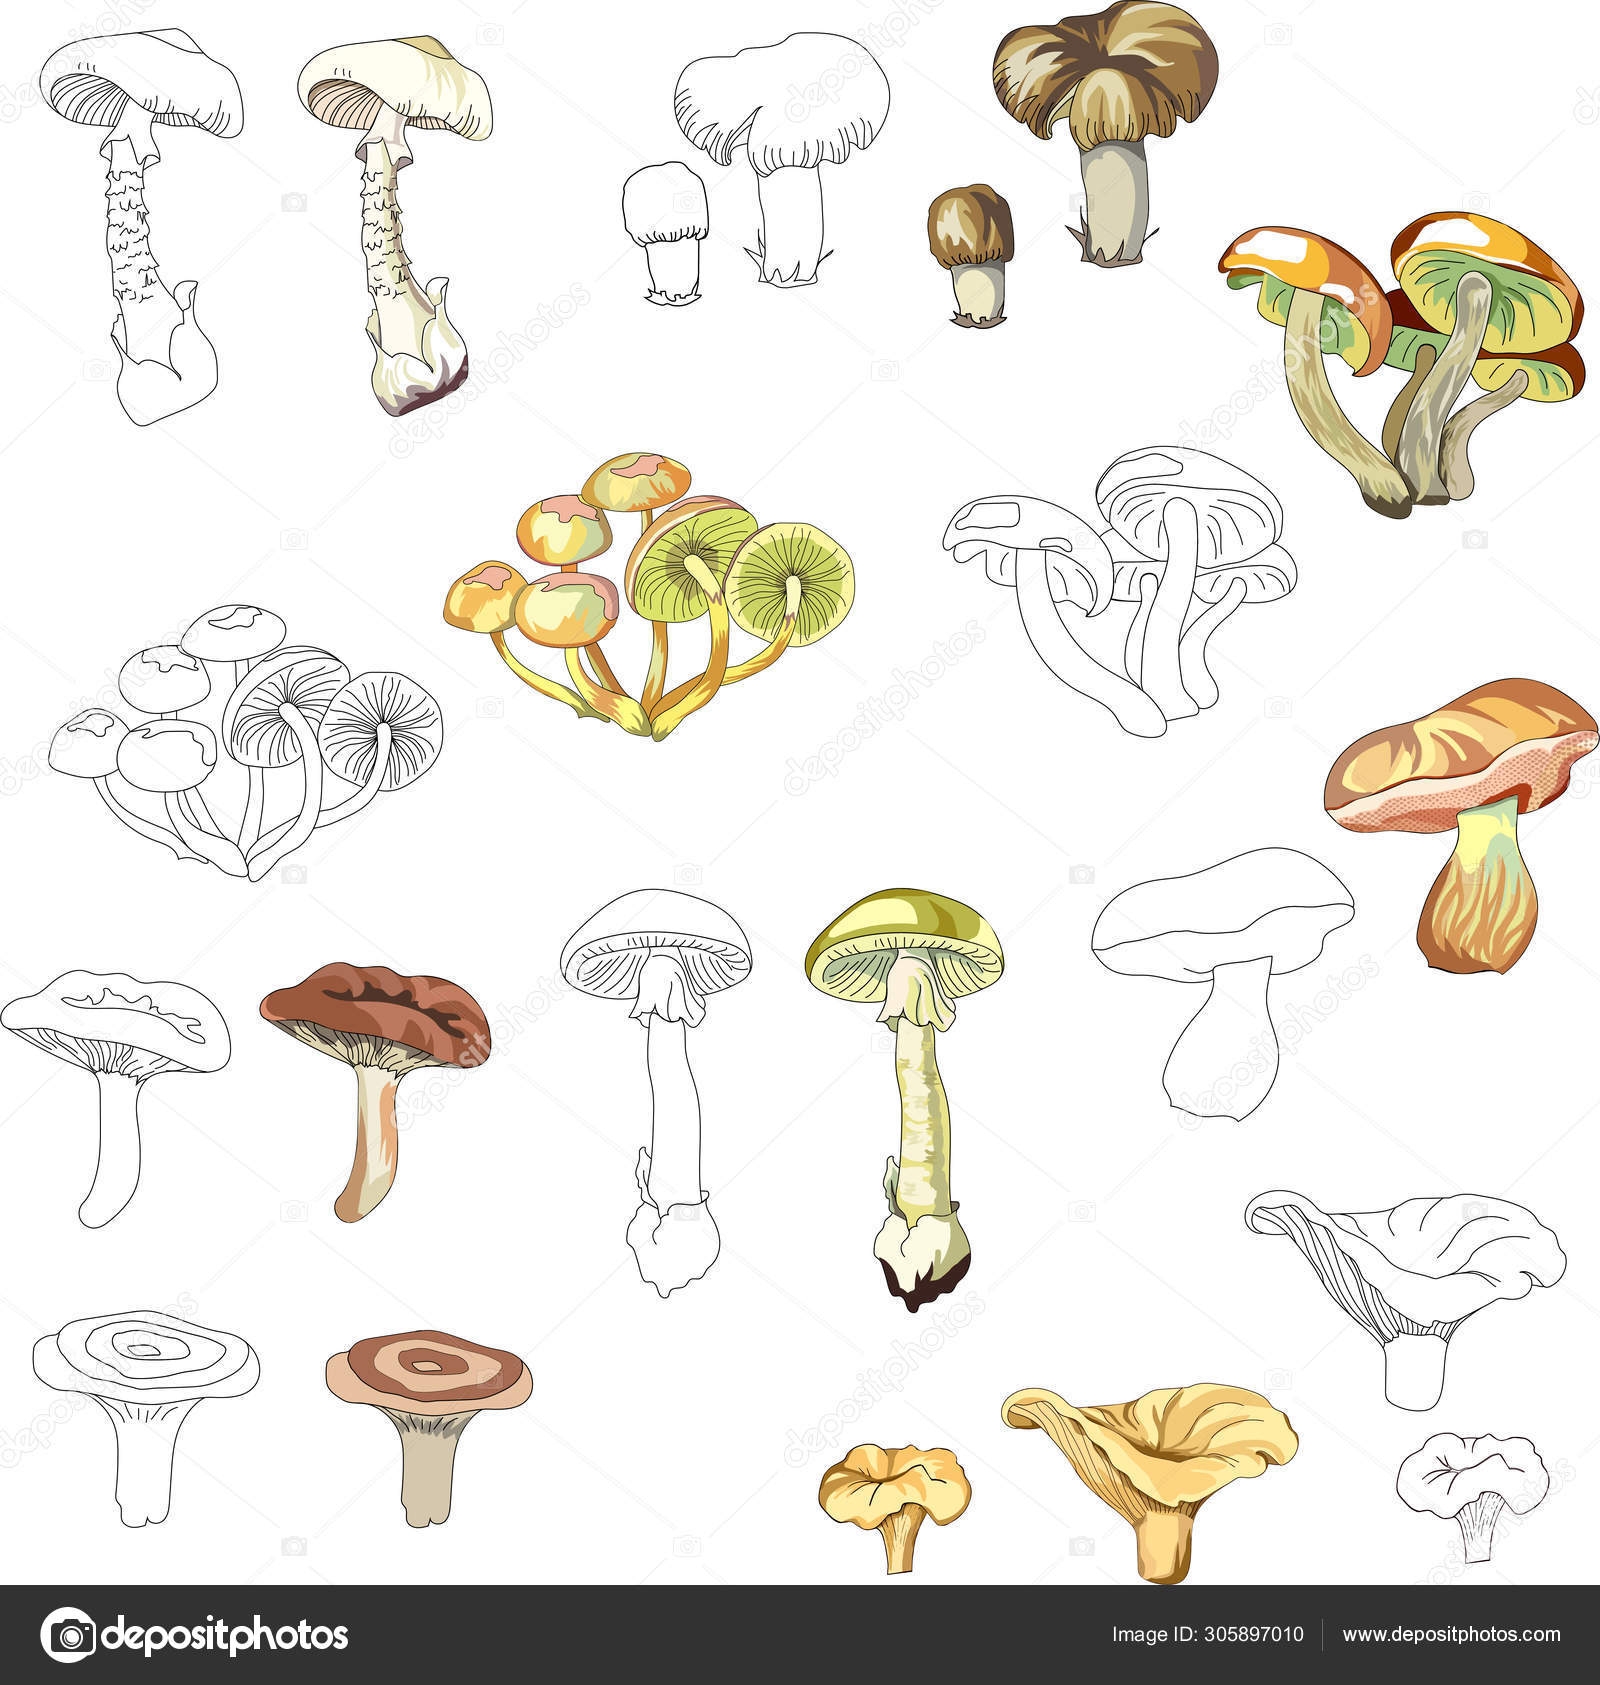 Ядовитые грибы раскраска - 57 фото